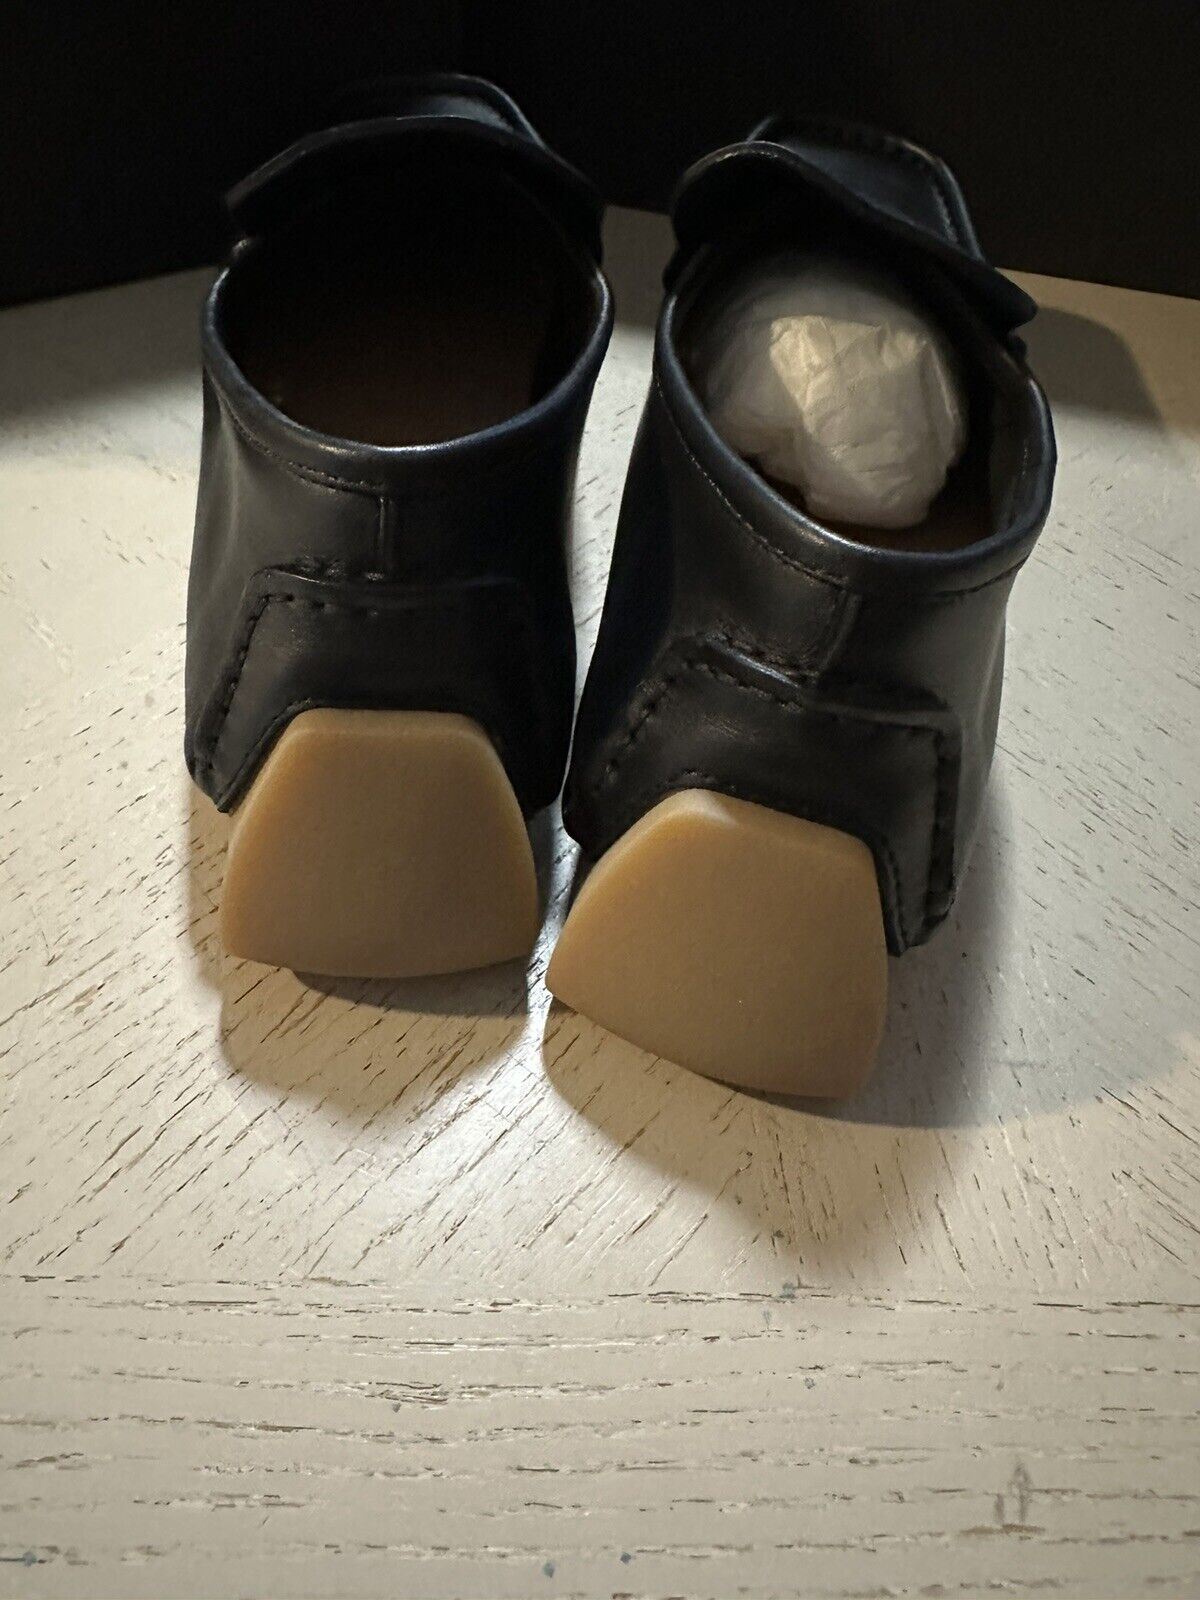 New $670 Bottega Veneta Men Leather Driver Loafers Shoes Black 9.5 US/42.5 Eu